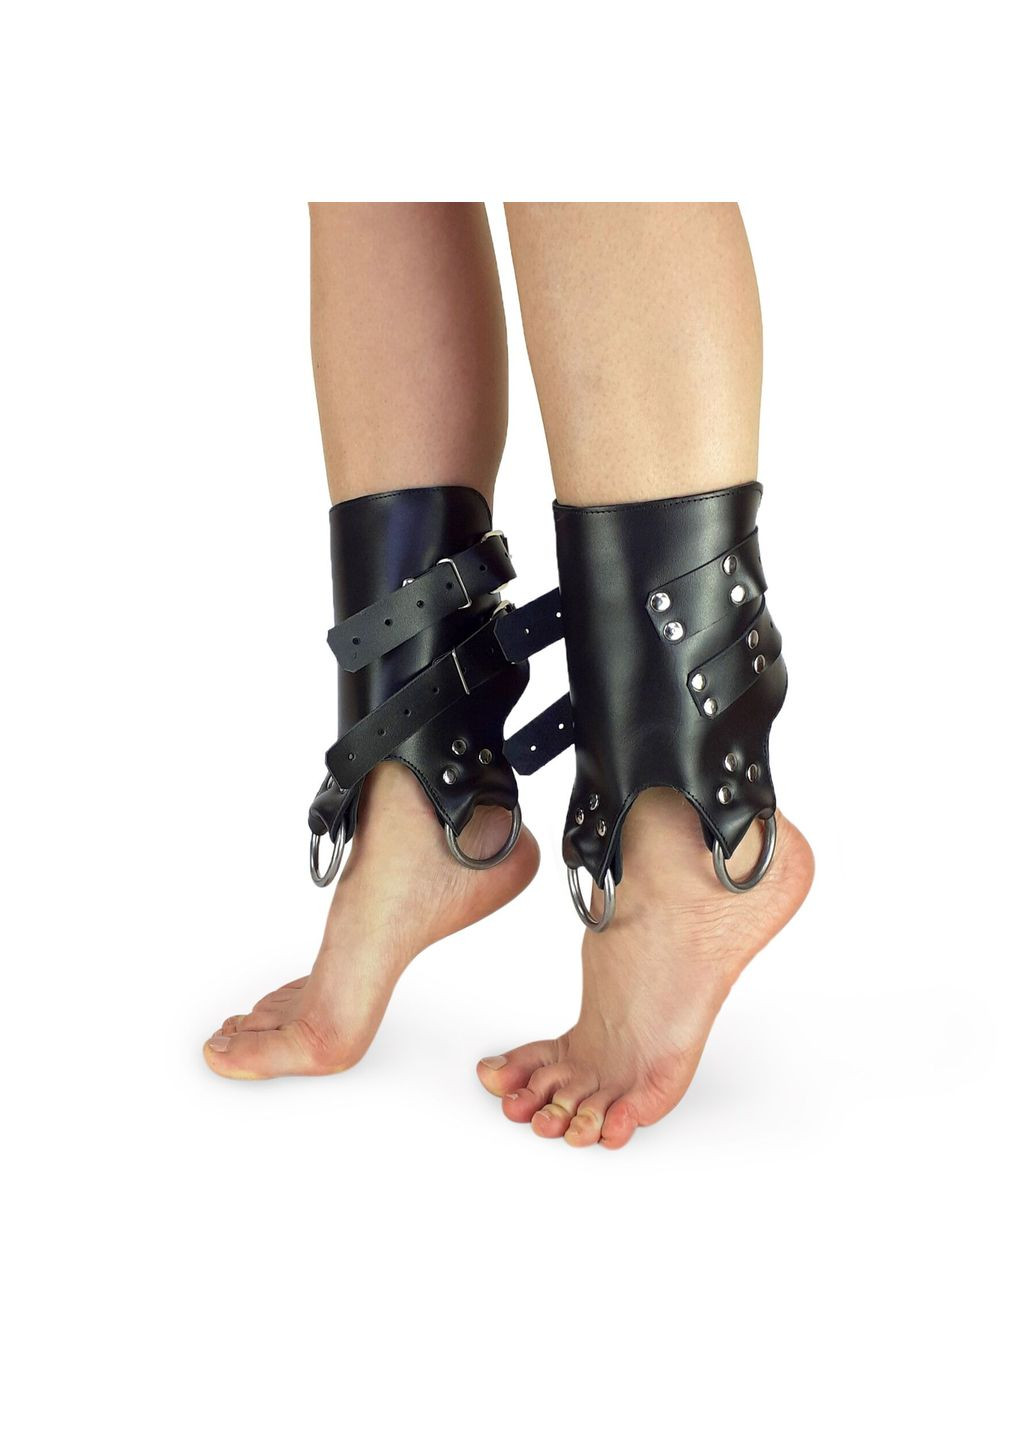 Поножи манжеты для подвеса за ноги Leg Cuffs, натуральная кожа, цвет черный Art of Sex (291440820)